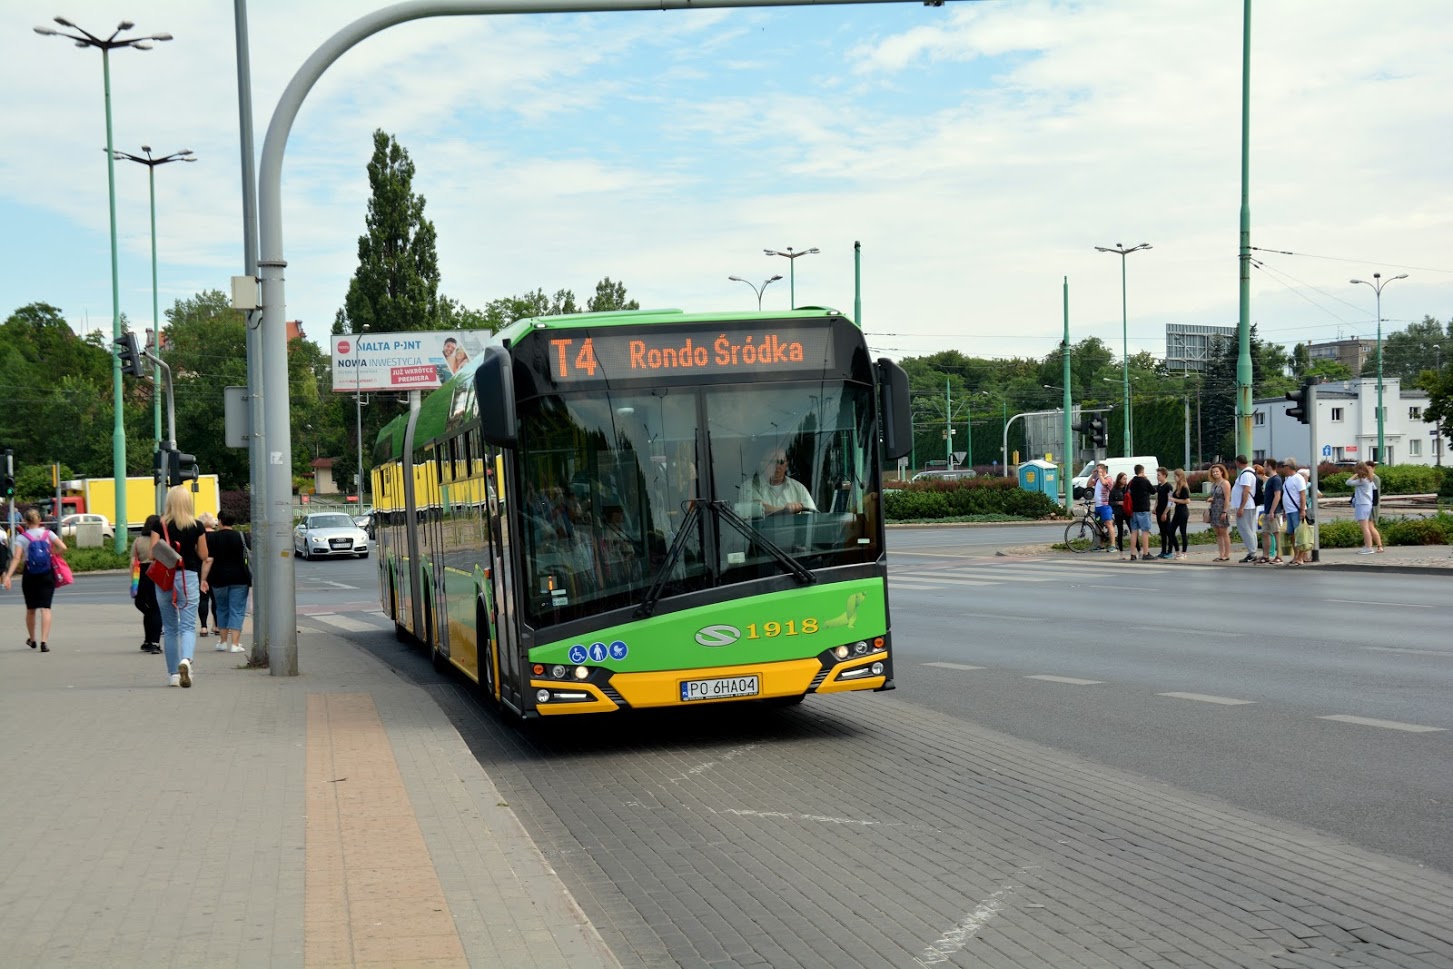 Aby ułatwić pasażerom przemieszczanie się, uruchomiona została linia autobusowa za tramwaj T4, która kursuje na trasie rondo Śródka - rondo Rataje - grafika artykułu